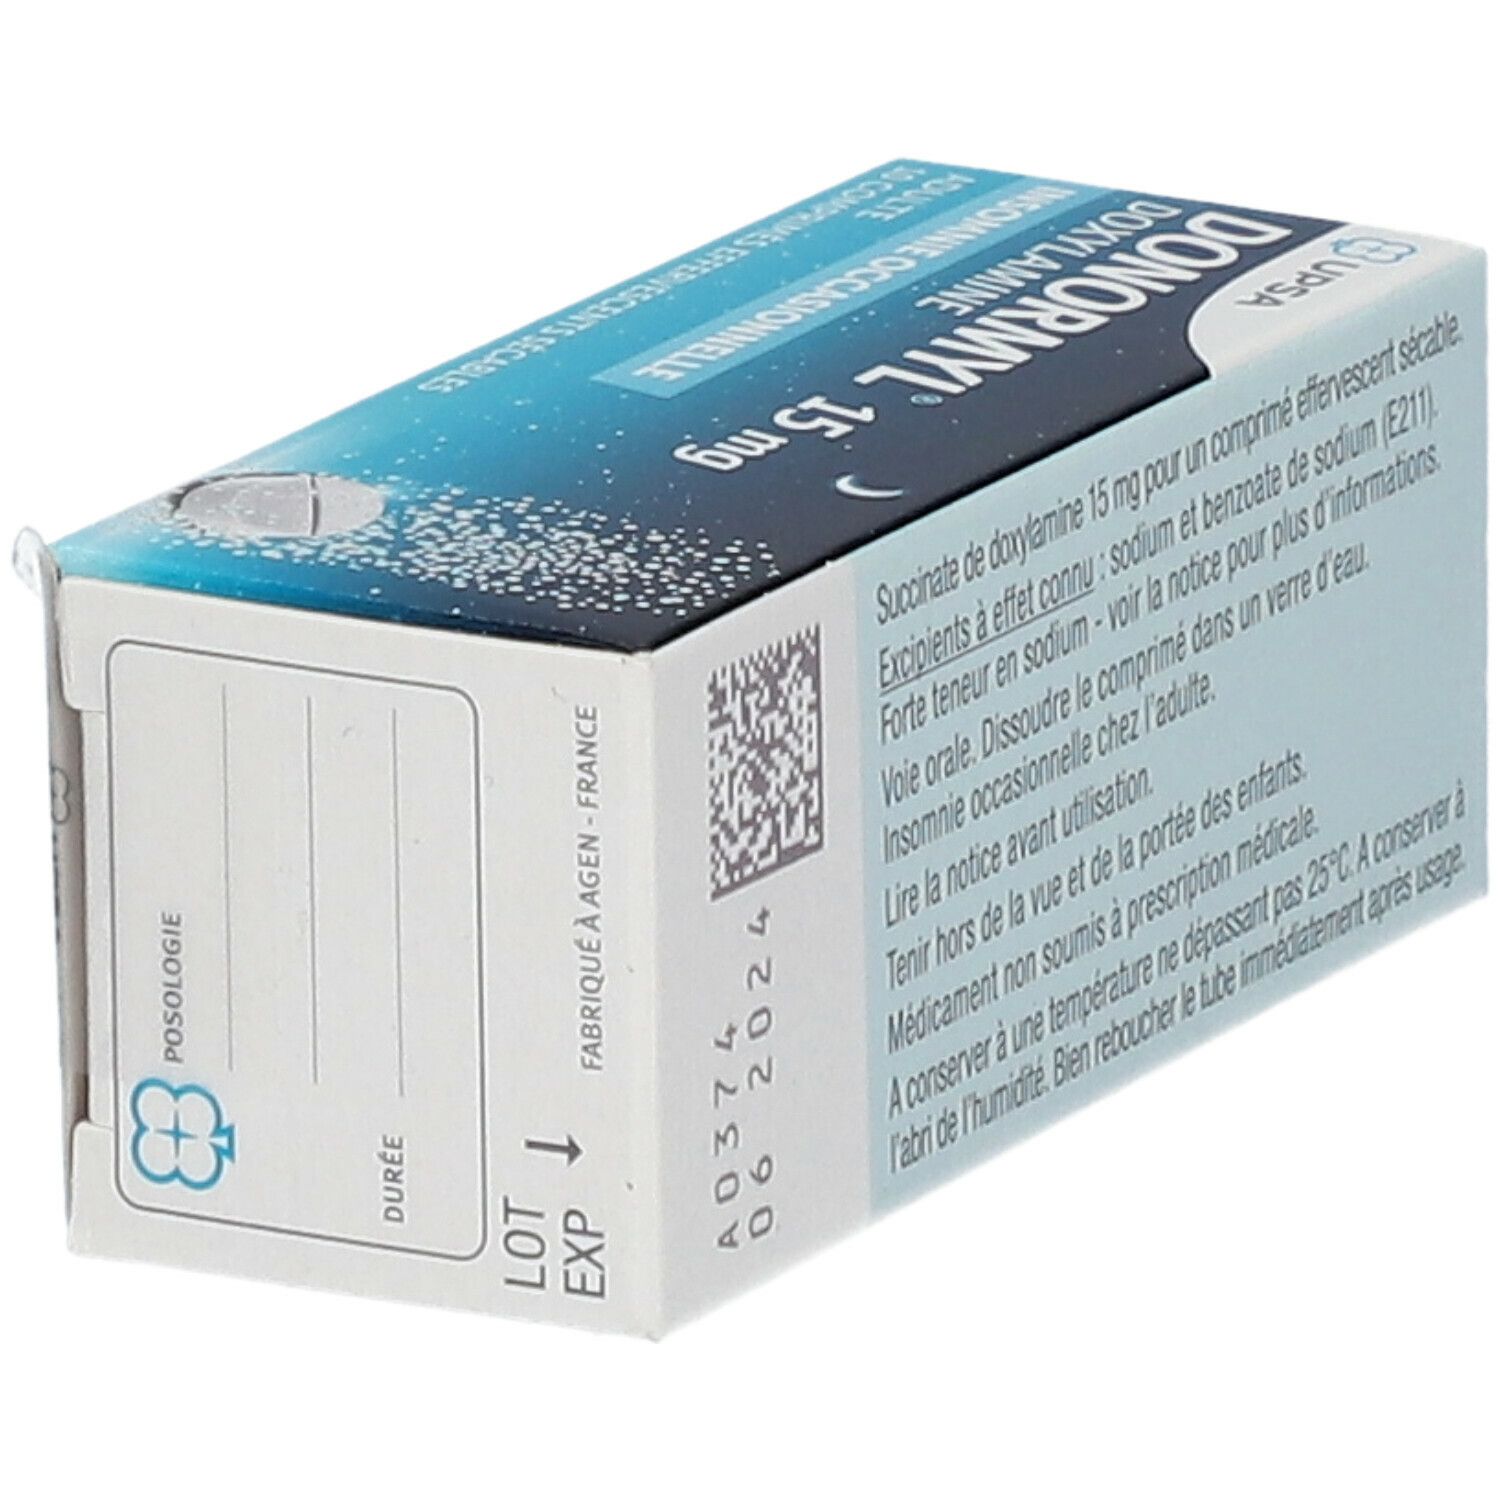 Donormyl® 15 mg Comprimé effervescent sécable